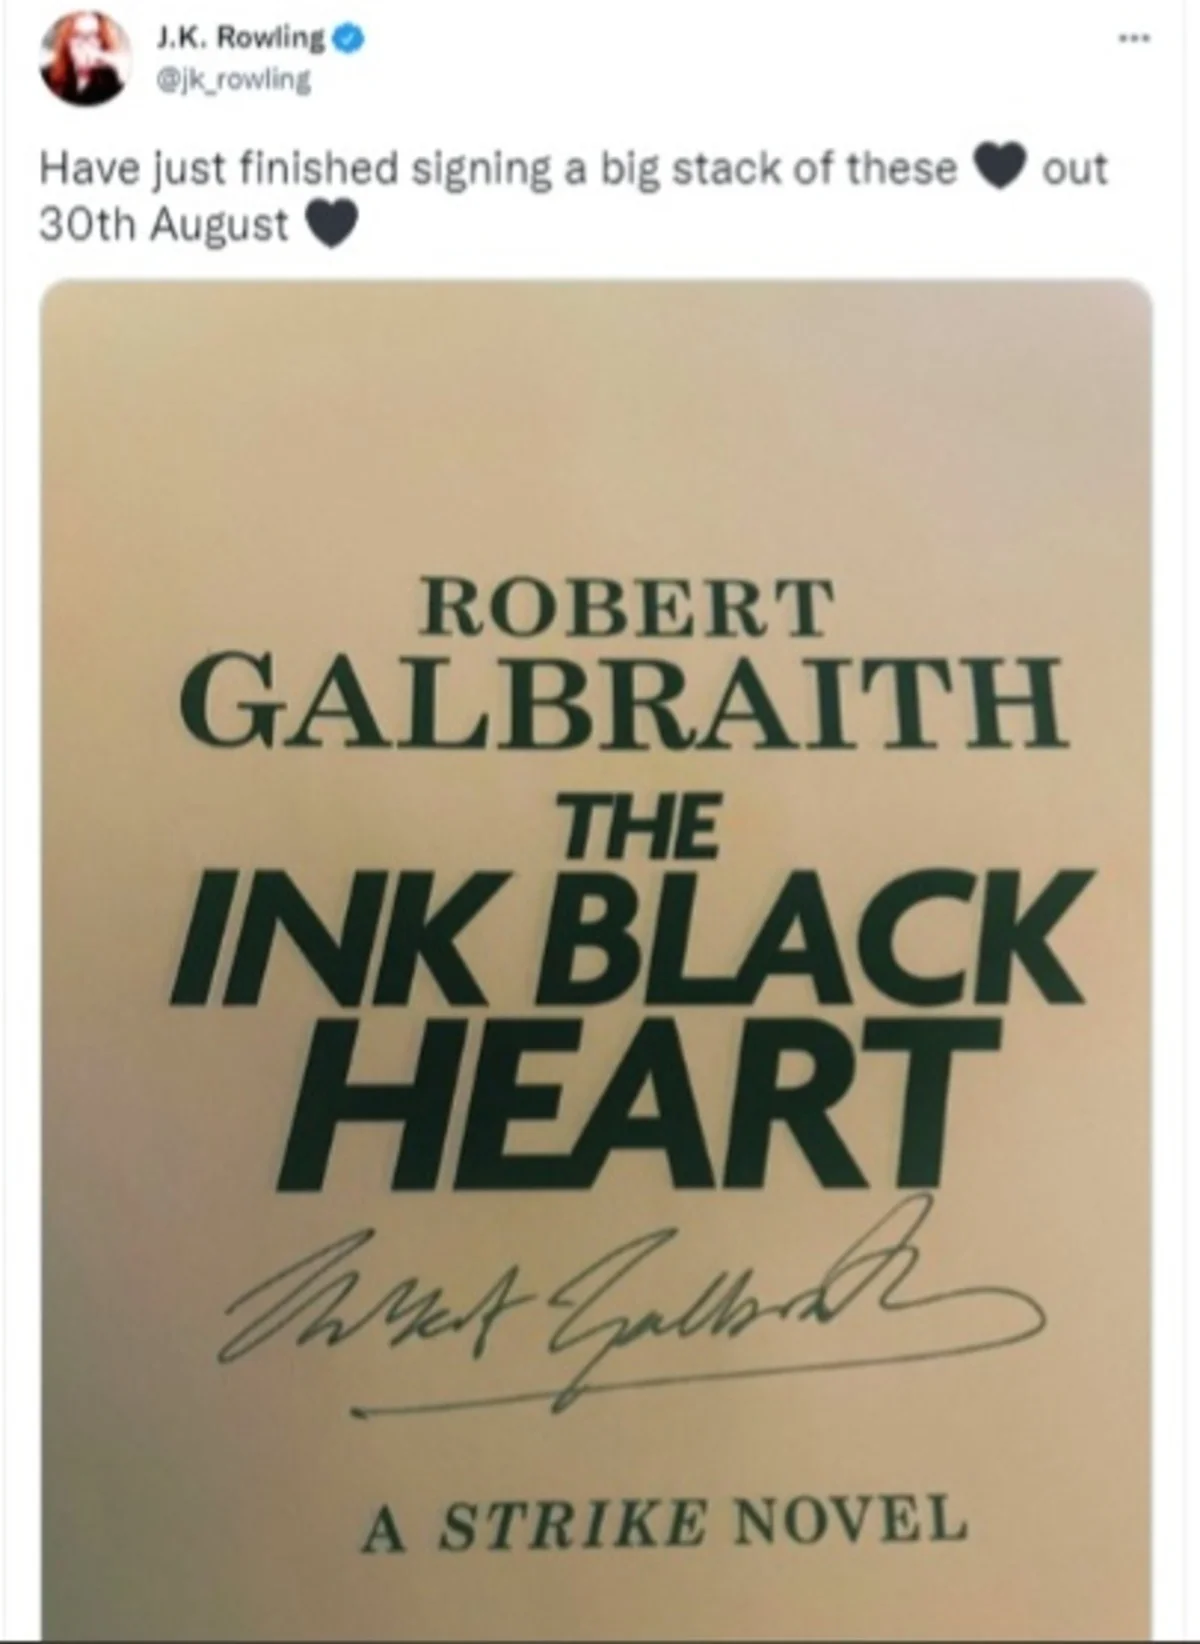 Джоан Роулинг назвала дату выхода своей новой книги - фото 1